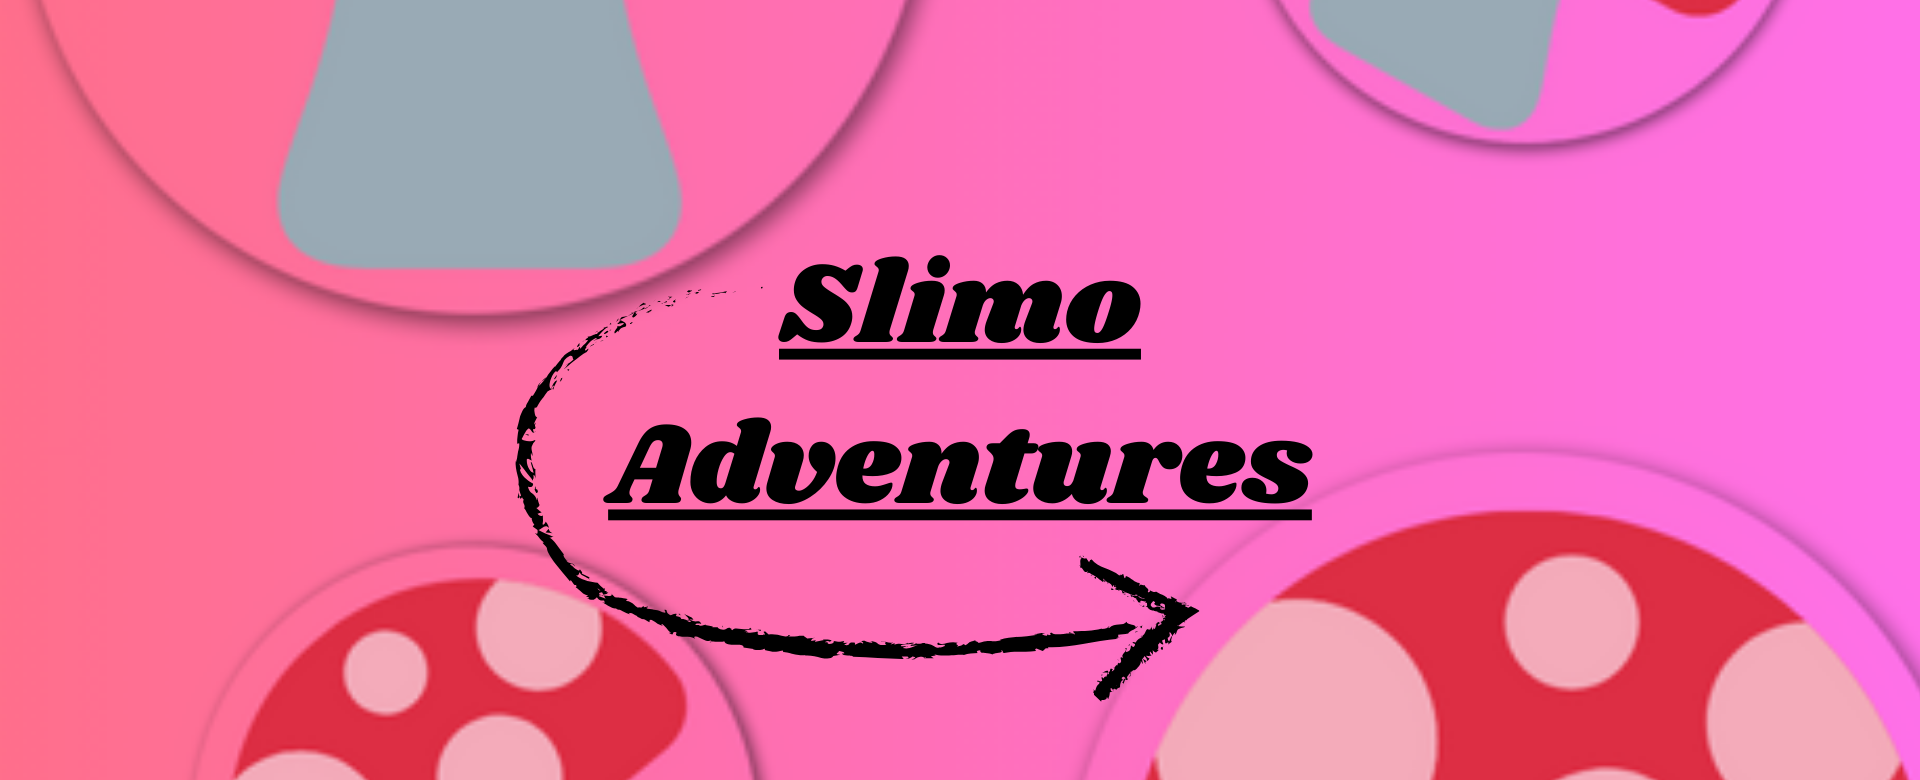 Slimo Adventures